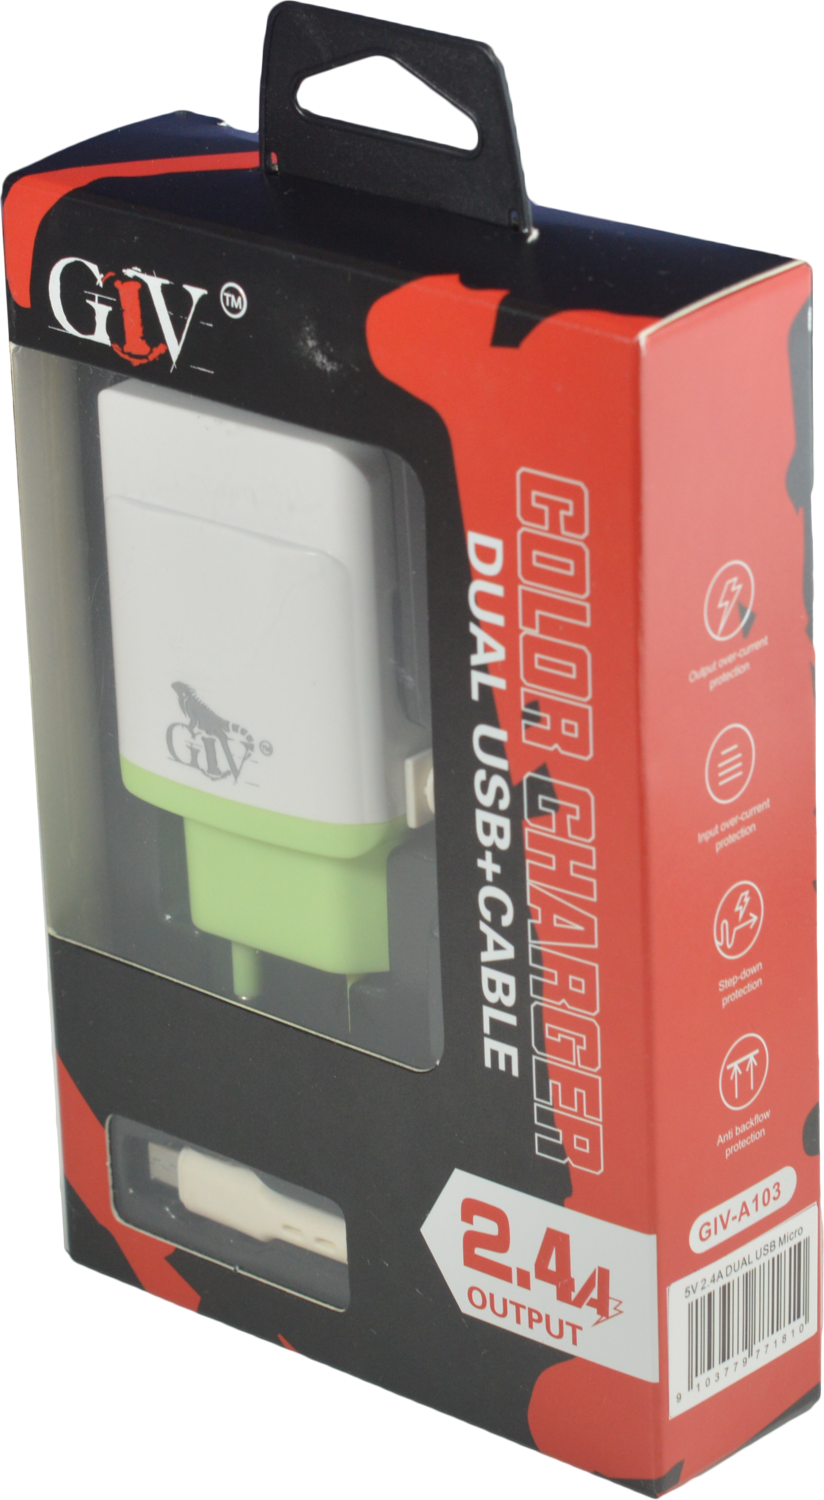 Cargador Doble USB 2.4A | GIV A103 con cable iPhone